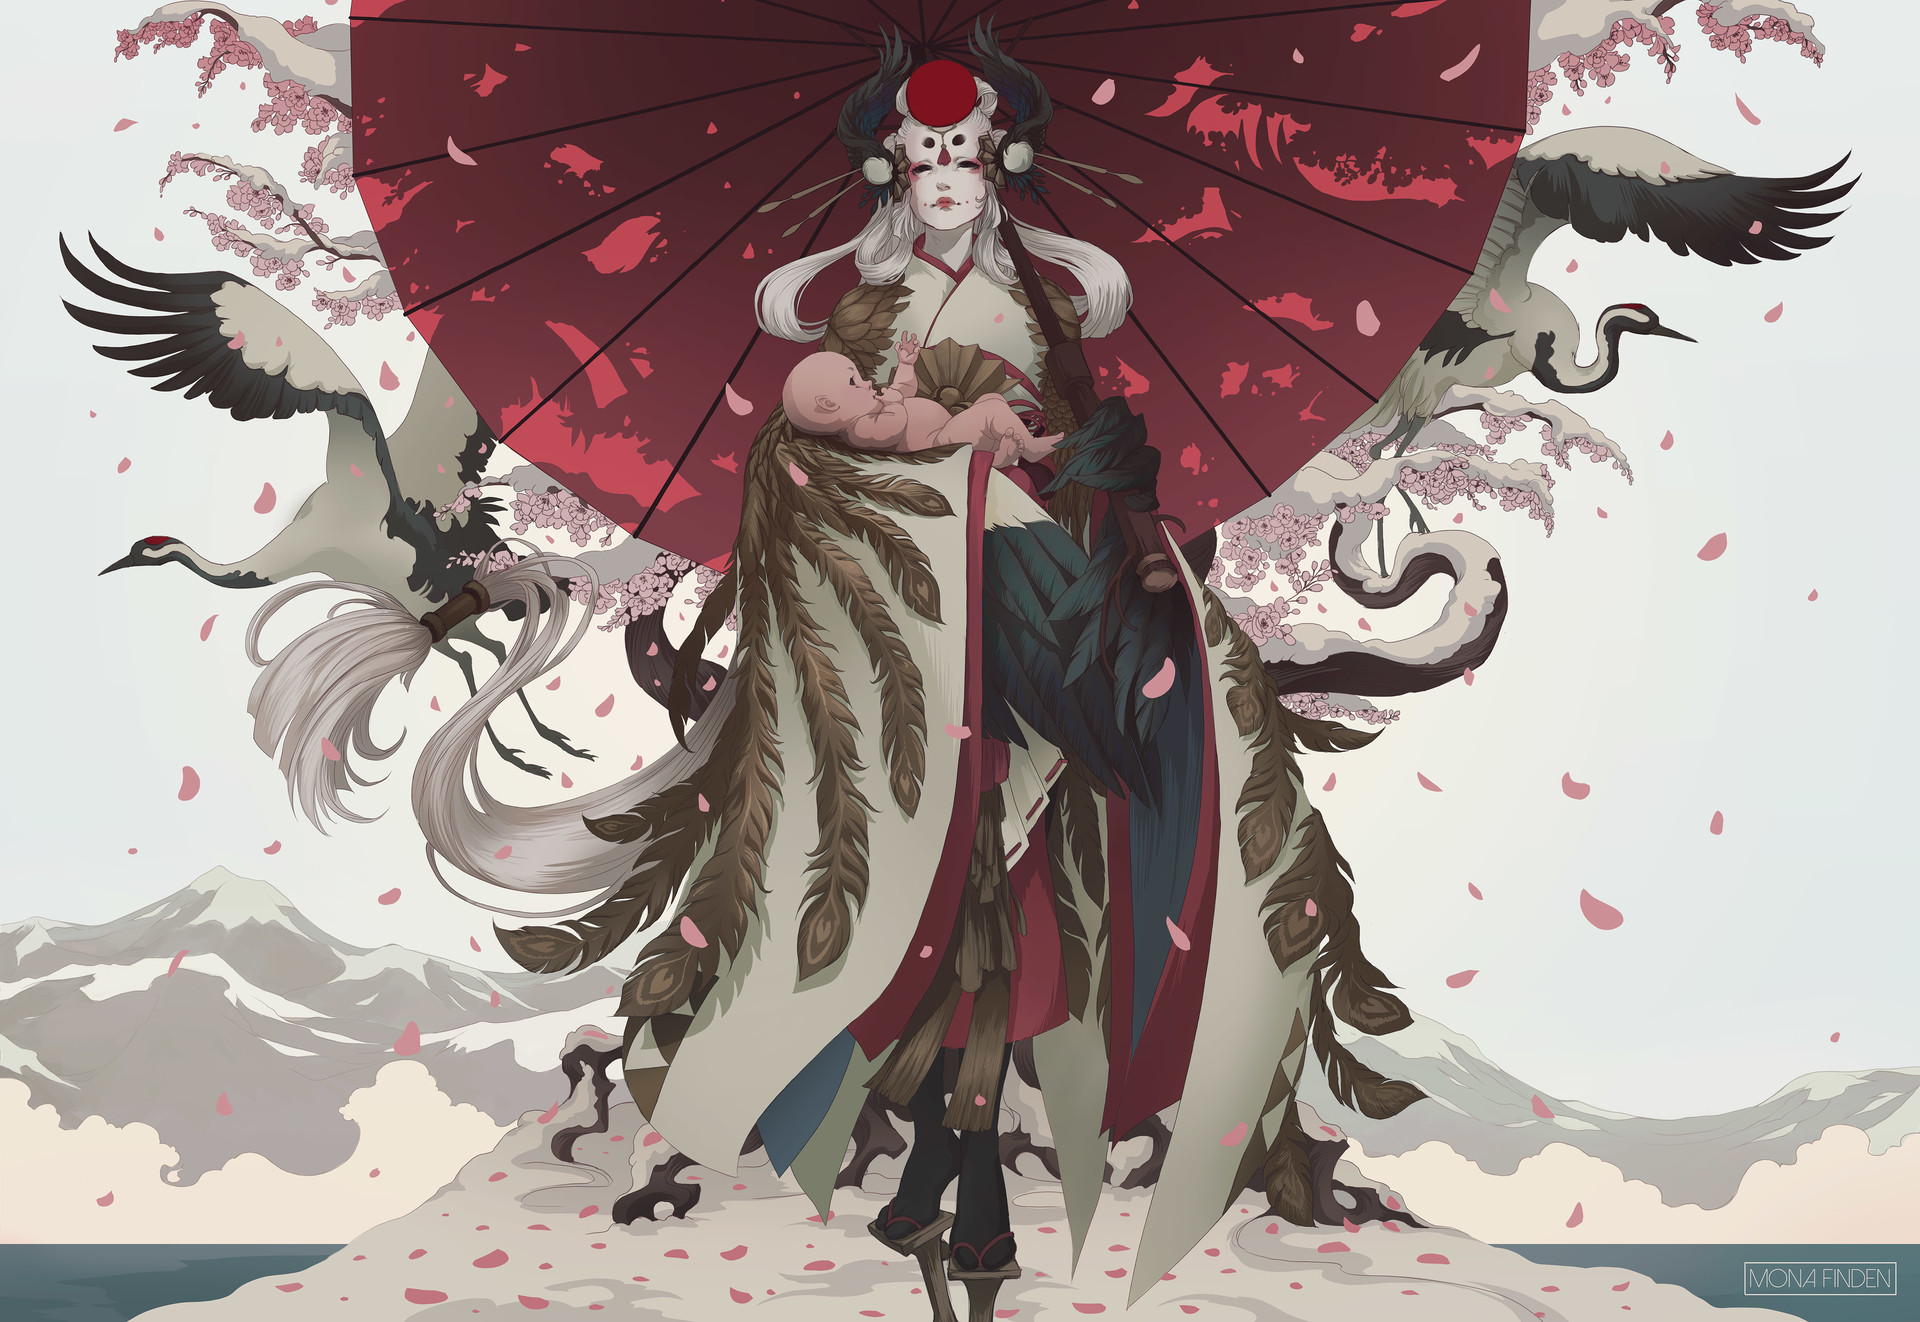 Mona Finden Illustration Women Geisha Goose Feathers Mountains Mantle White Hair Umbrella Petals Chi 1920x1322